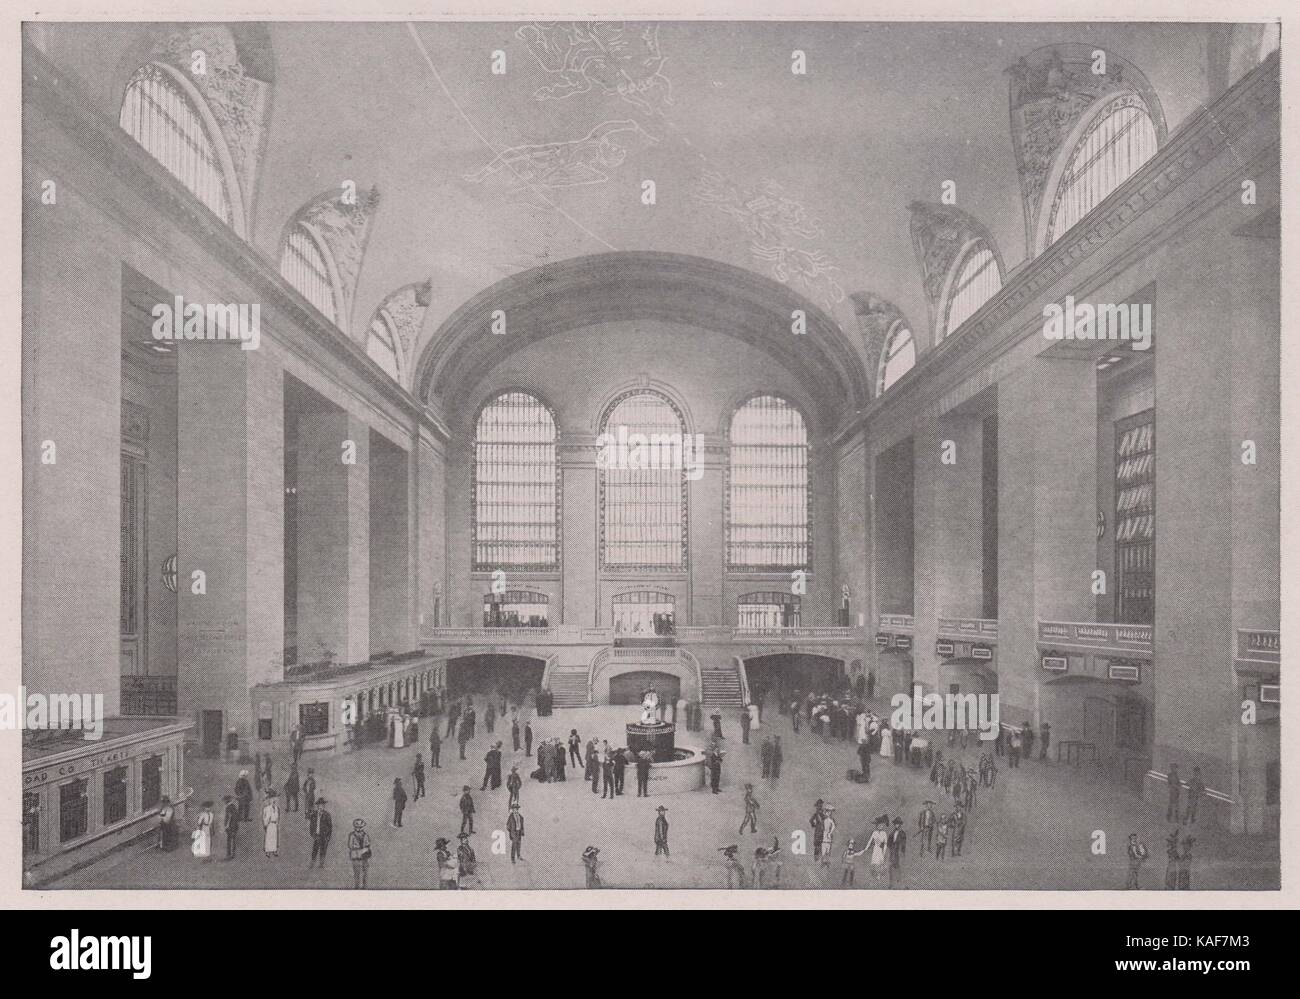 Intérieur de la gare Grand Central. Le hall principal est l'une des principales caractéristiques du nouveau dépôt. C'est 120x130 pieds et… Banque D'Images